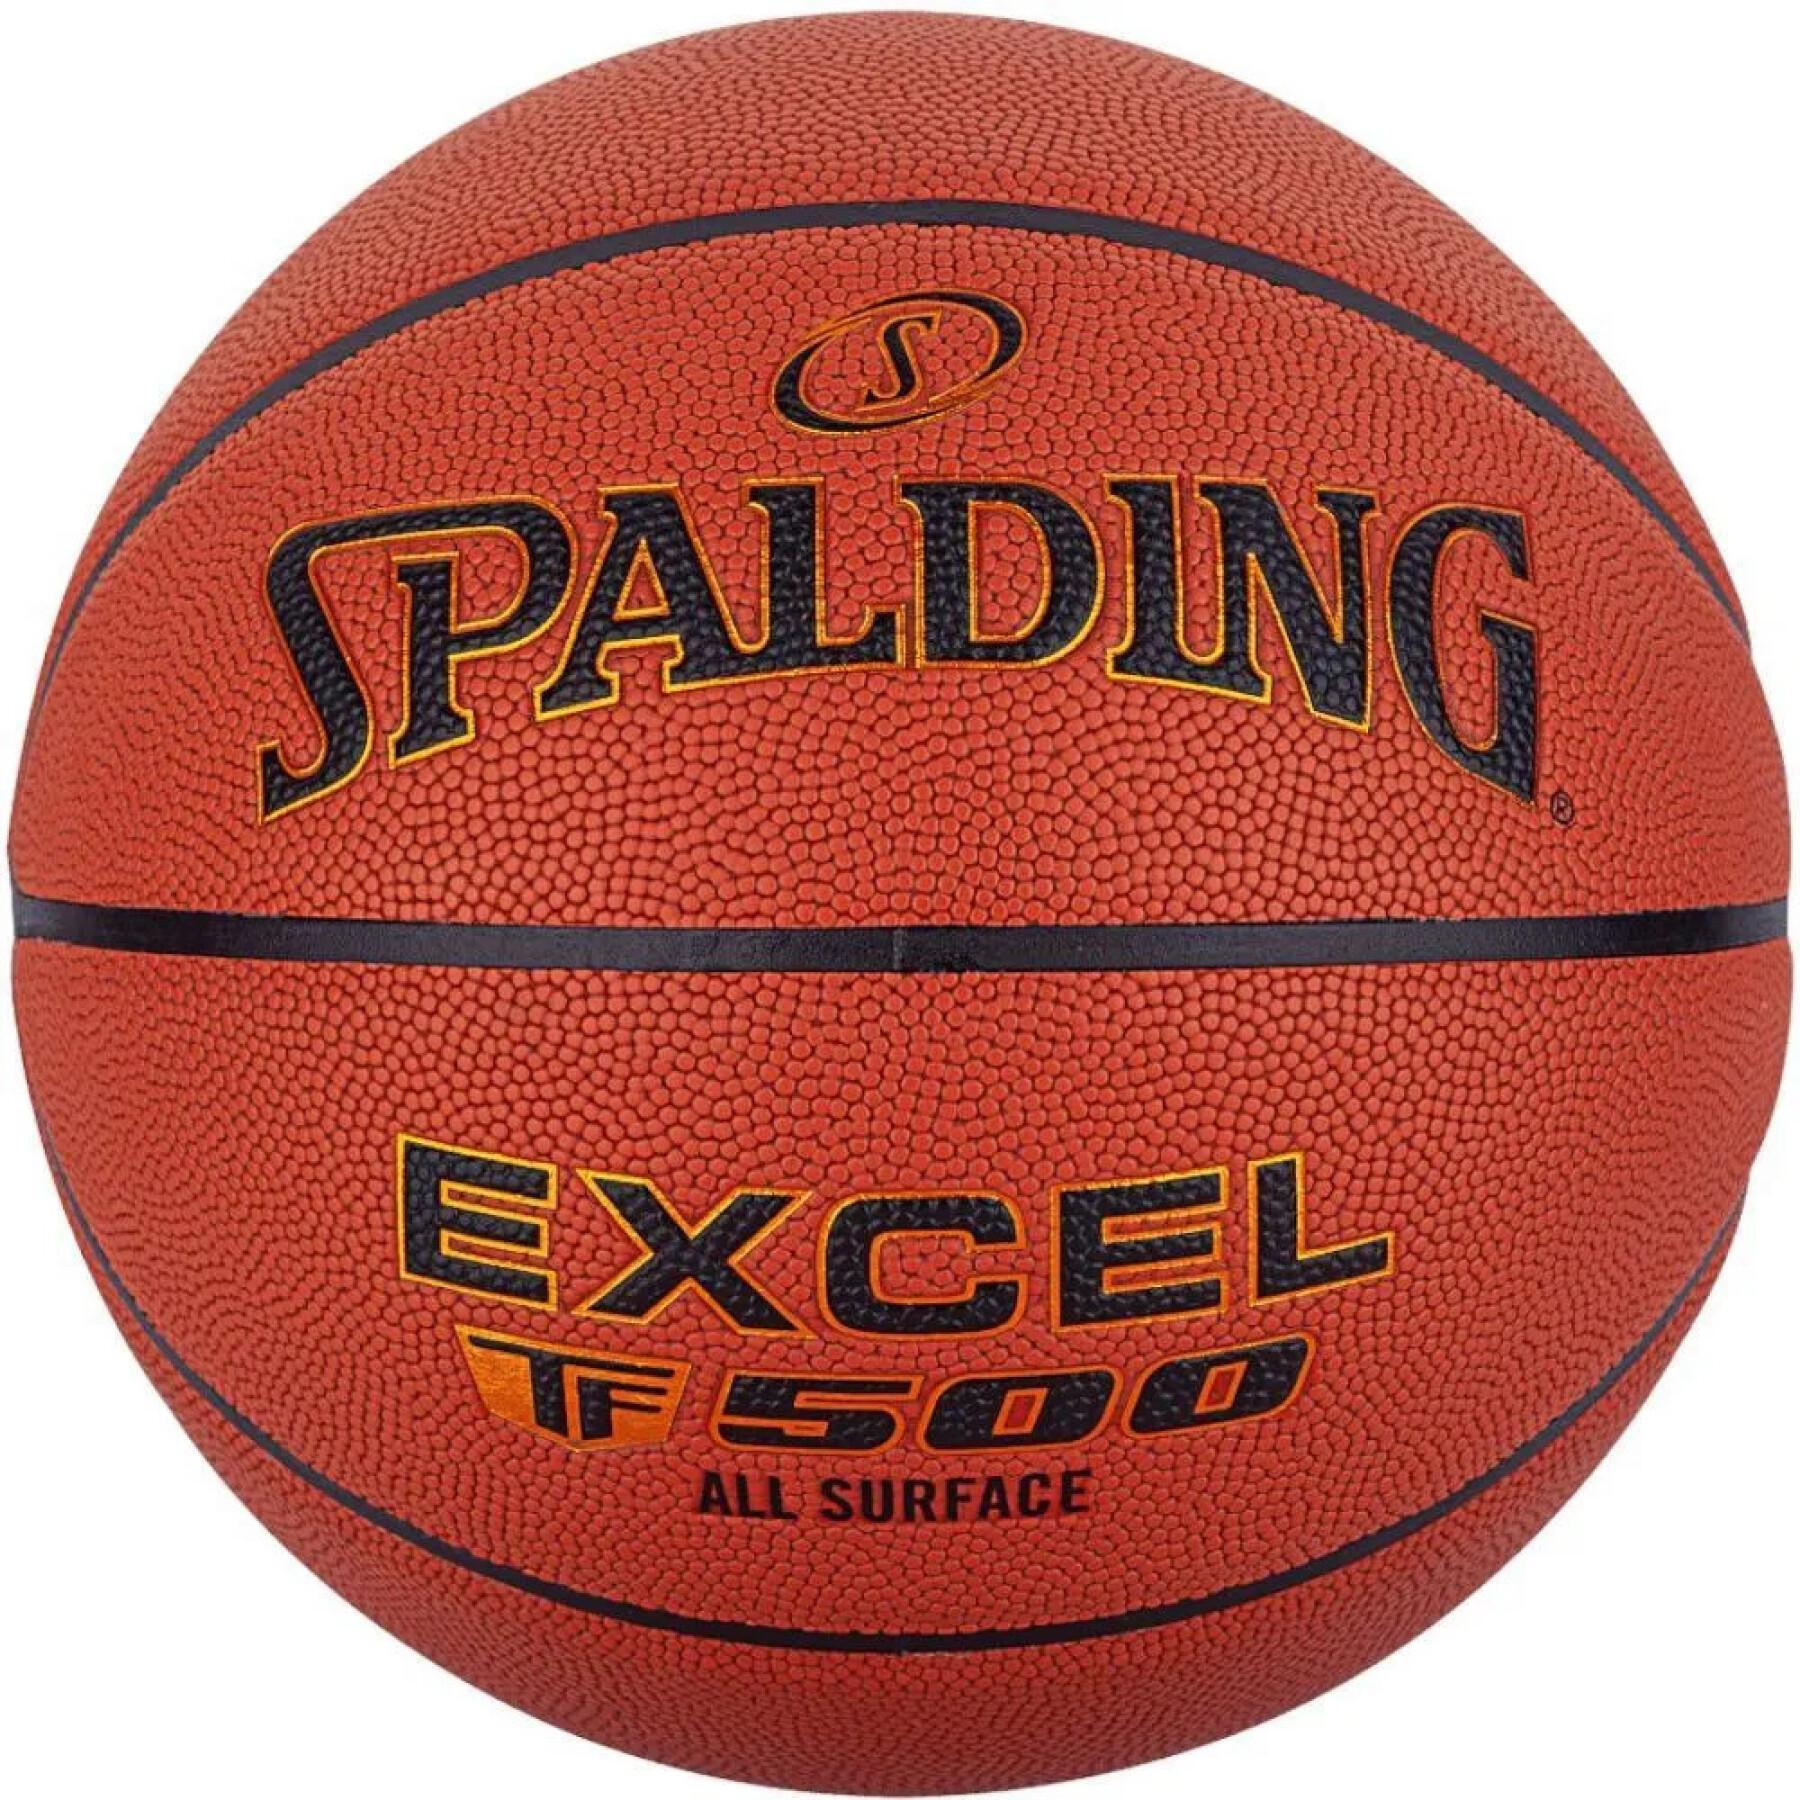 Basketbal Spalding Excel TF-500 Composite